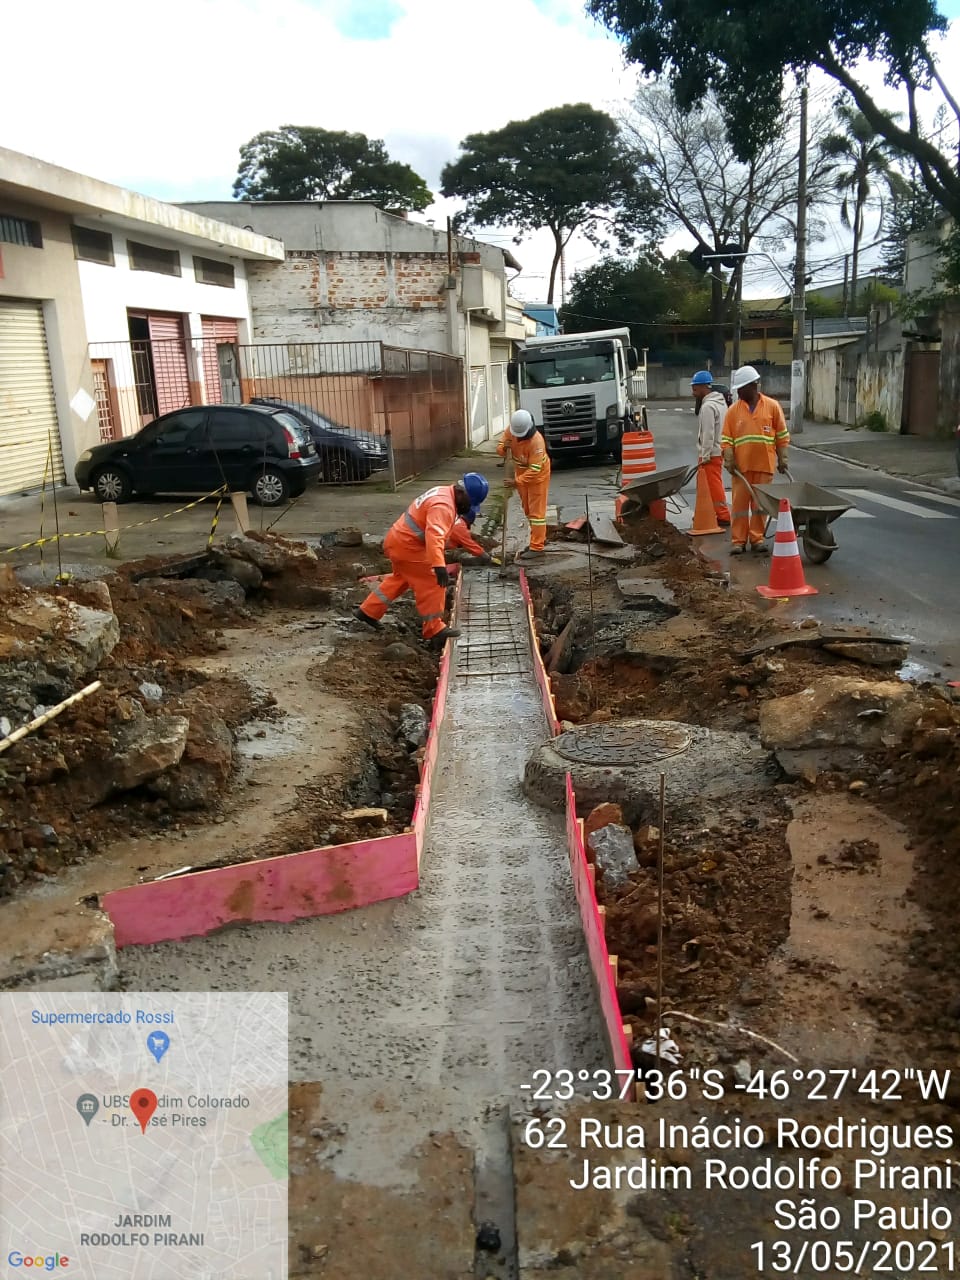 Quatro trabalhadores com macacão laranja concluem concretagem de um sarjetão, em foto identificada como rua Inácio Rodrigues, Jardim Rodolfo Pirani.